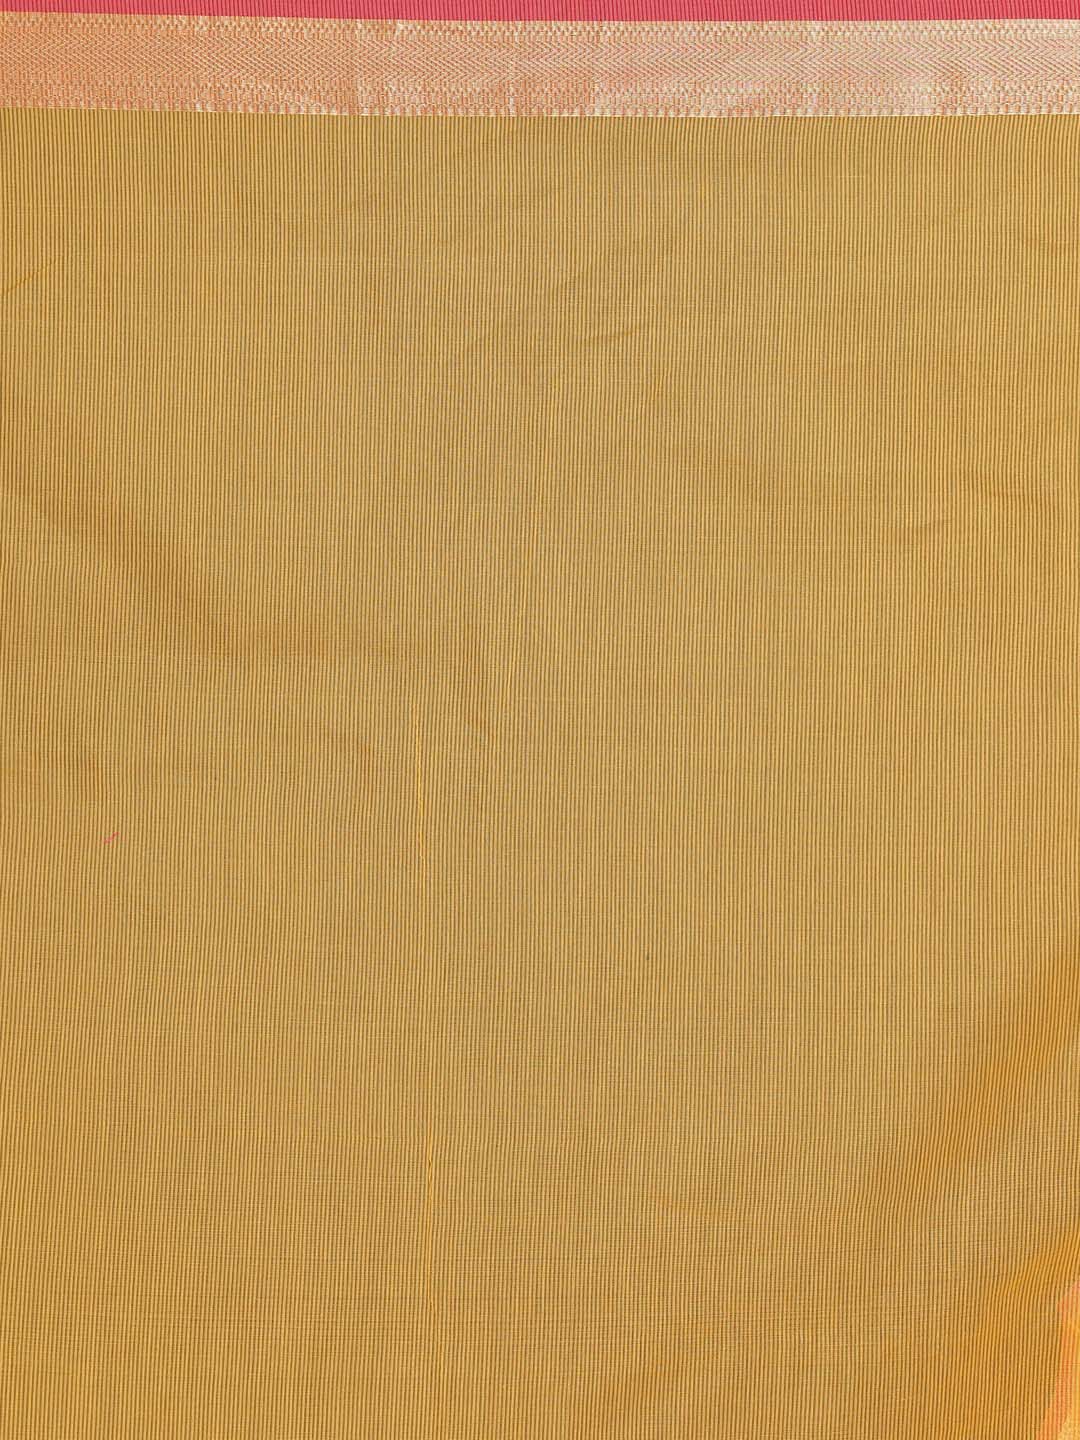 Indethnic Banarasi Yellow Solid Daily Wear Saree - Saree Detail View